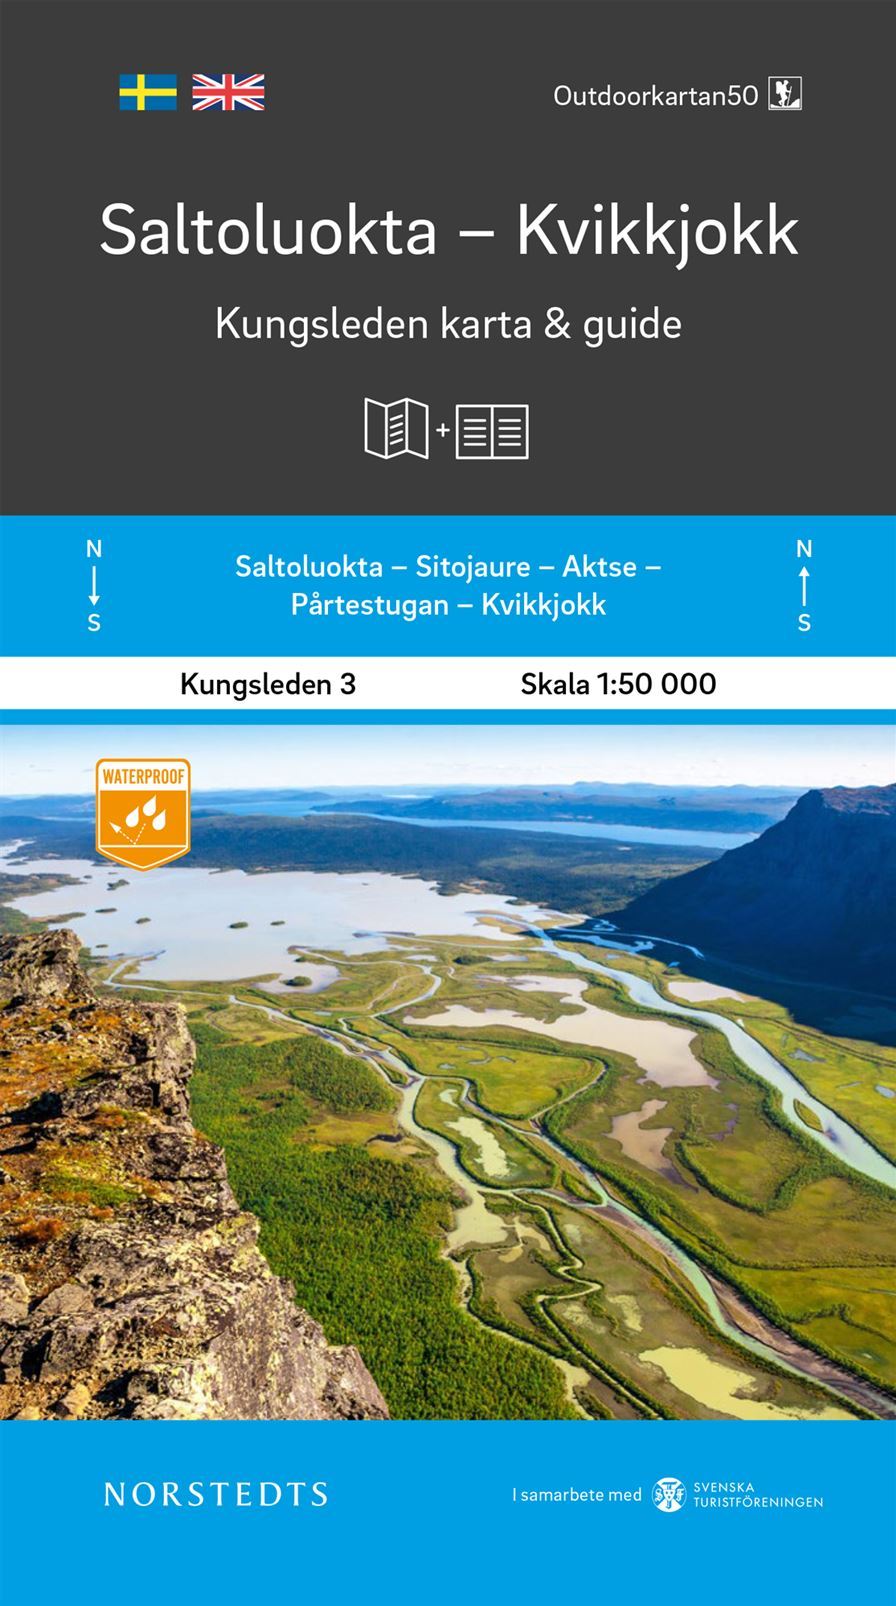 Carte & guide du Kungsleden n° 3 - Saltoluokta - Kvikkjokk (Suède) | Norstedts carte pliée Norstedts 